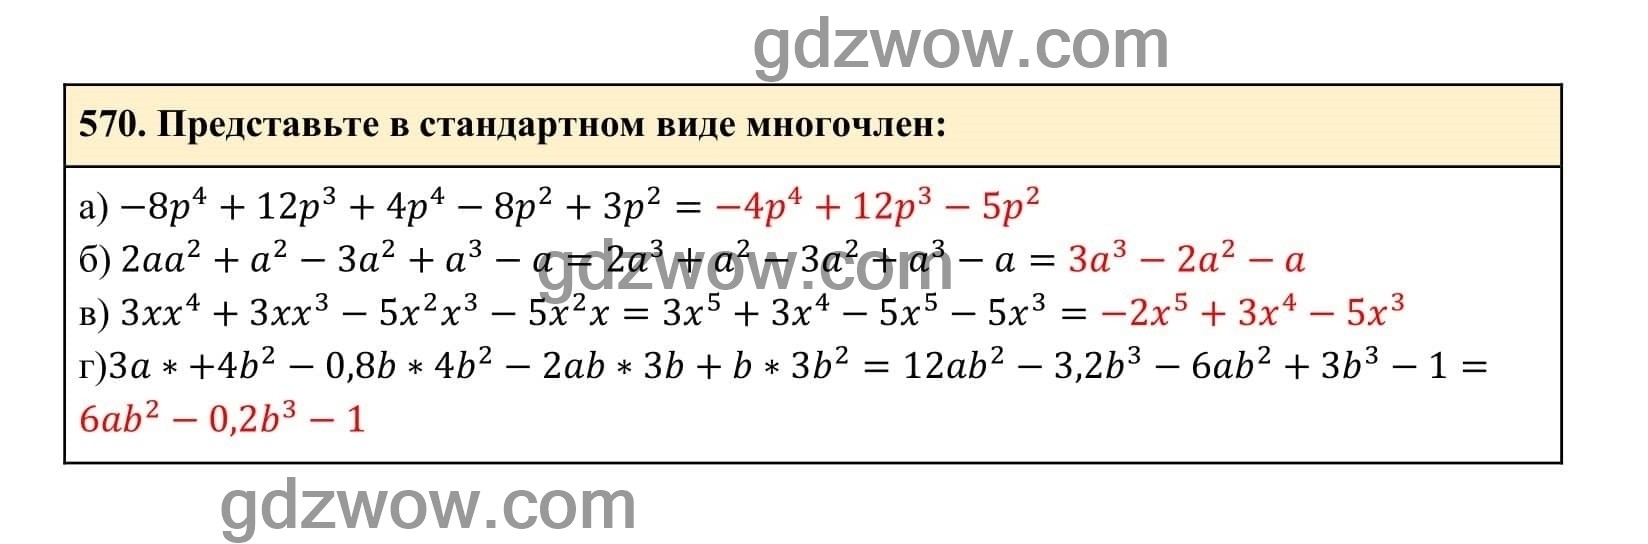 Упражнение 570 - ГДЗ по Алгебре 7 класс Учебник Макарычев (решебник) - GDZwow